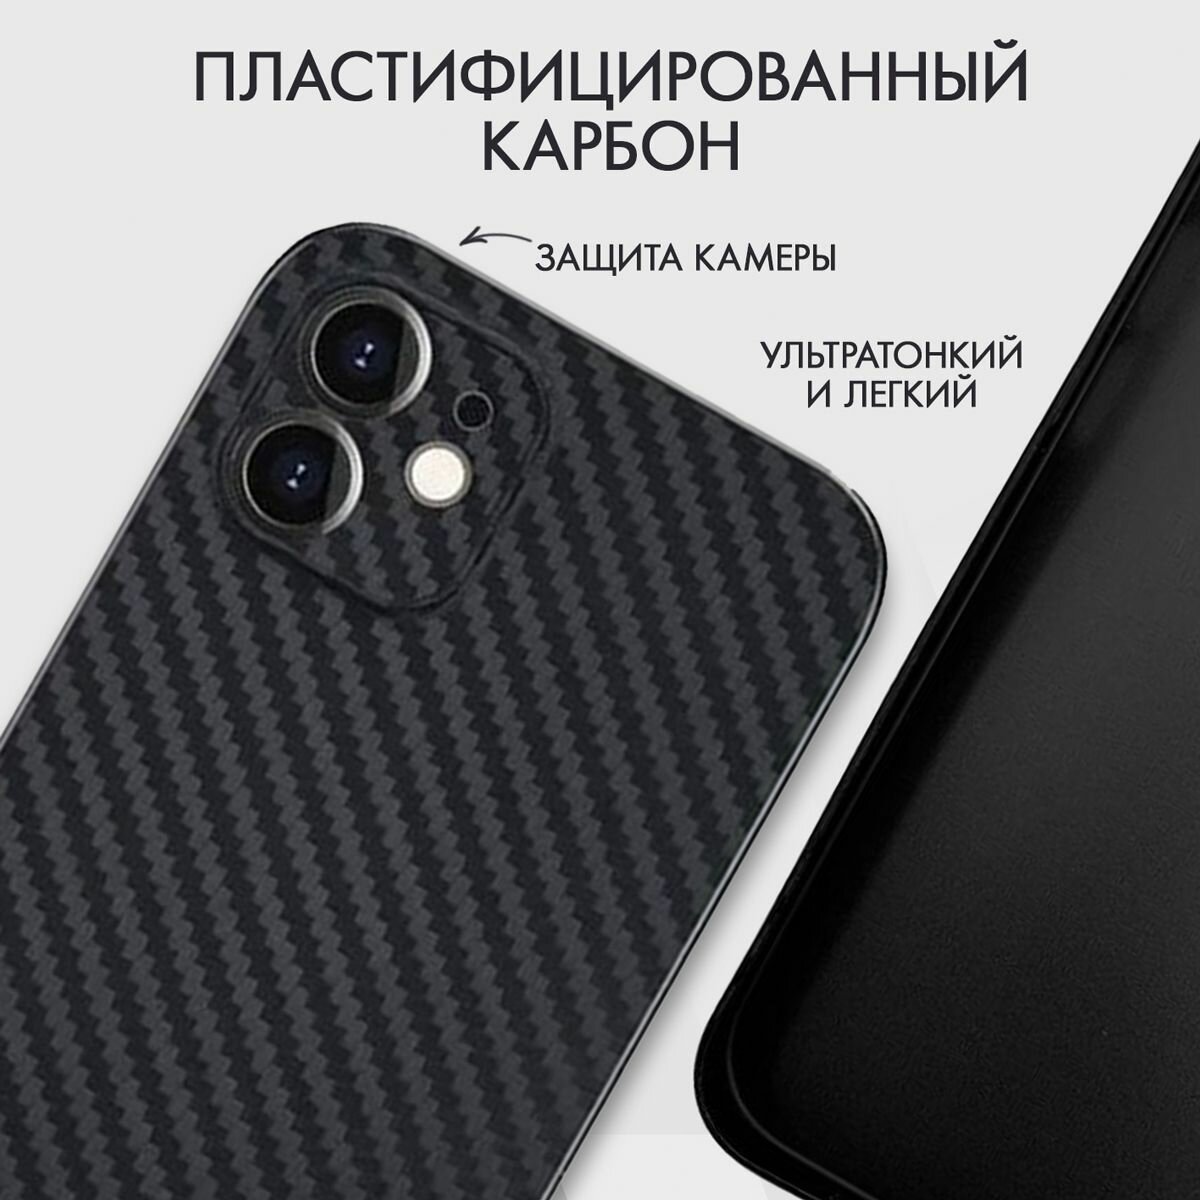 Чехол на айфон 12 карбоновый, ультратонкий для Apple iPhone 12 Magsafe , карбон, с защитой камеры, черный